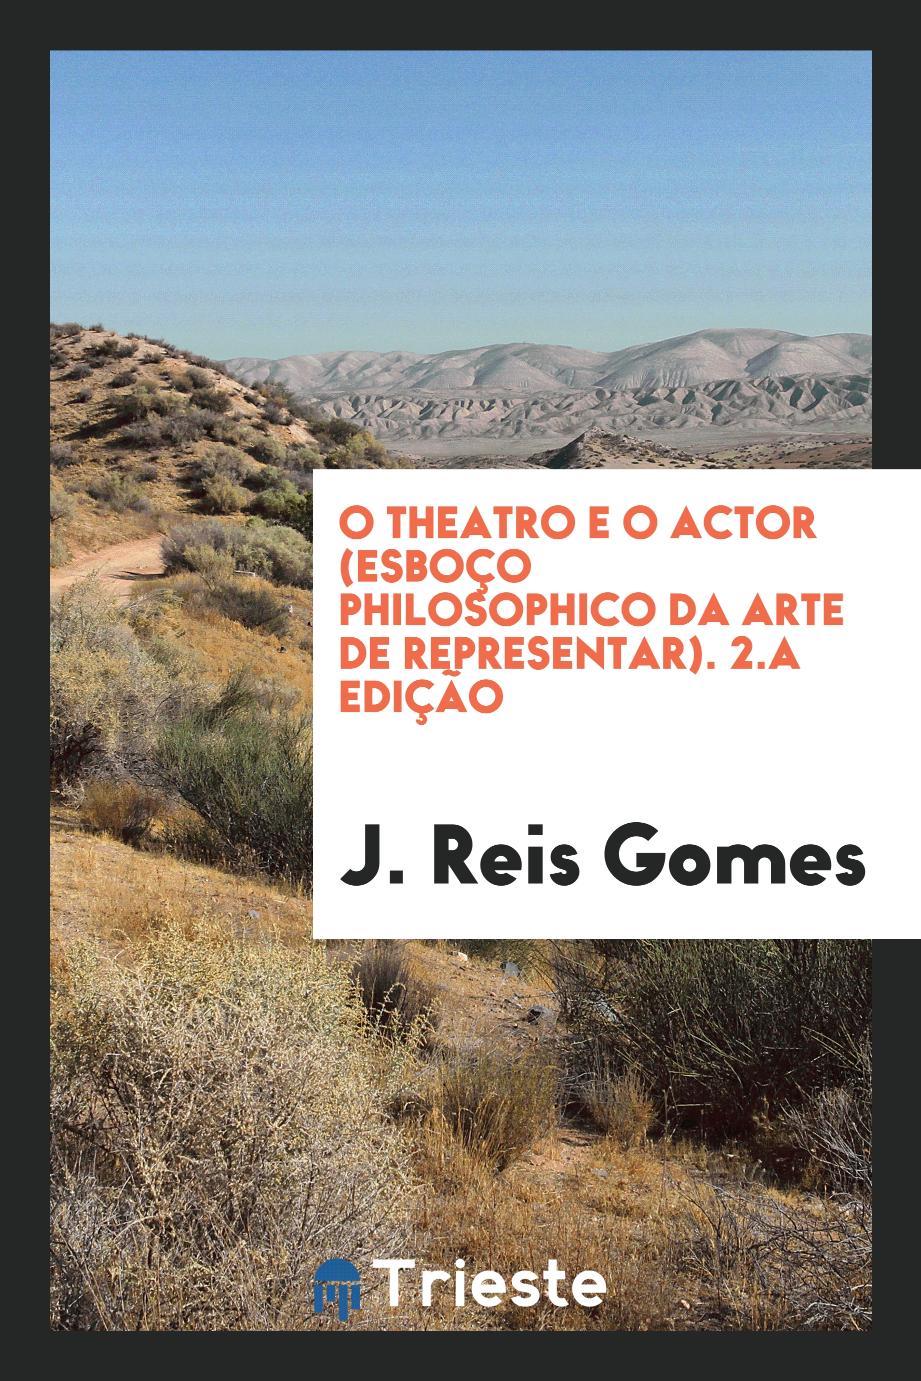 O Theatro e o Actor (Esboço Philosophico da Arte de Representar). 2.a edição